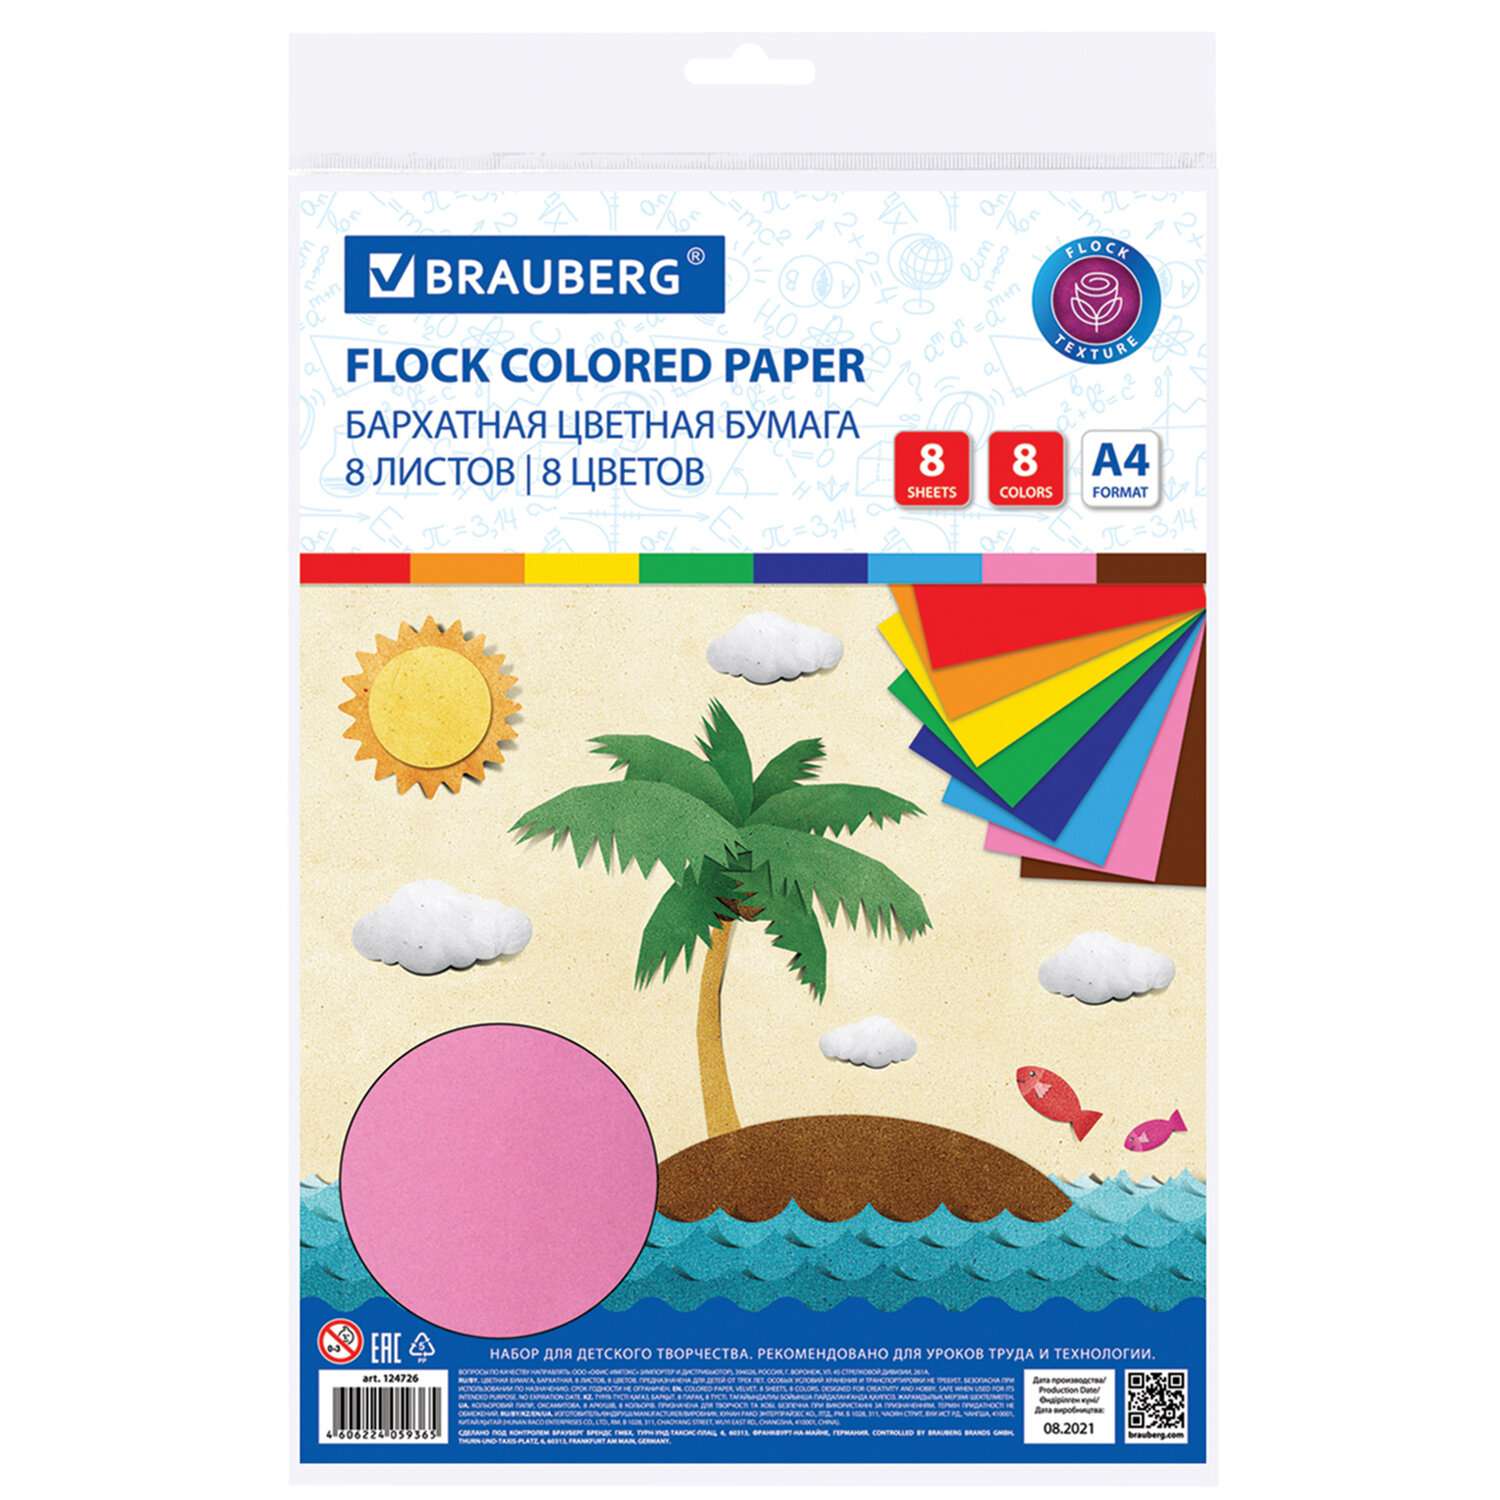 Цветная бумага Brauberg бархатная для творчества и оформления А4 8 листов 8 цветов - фото 5